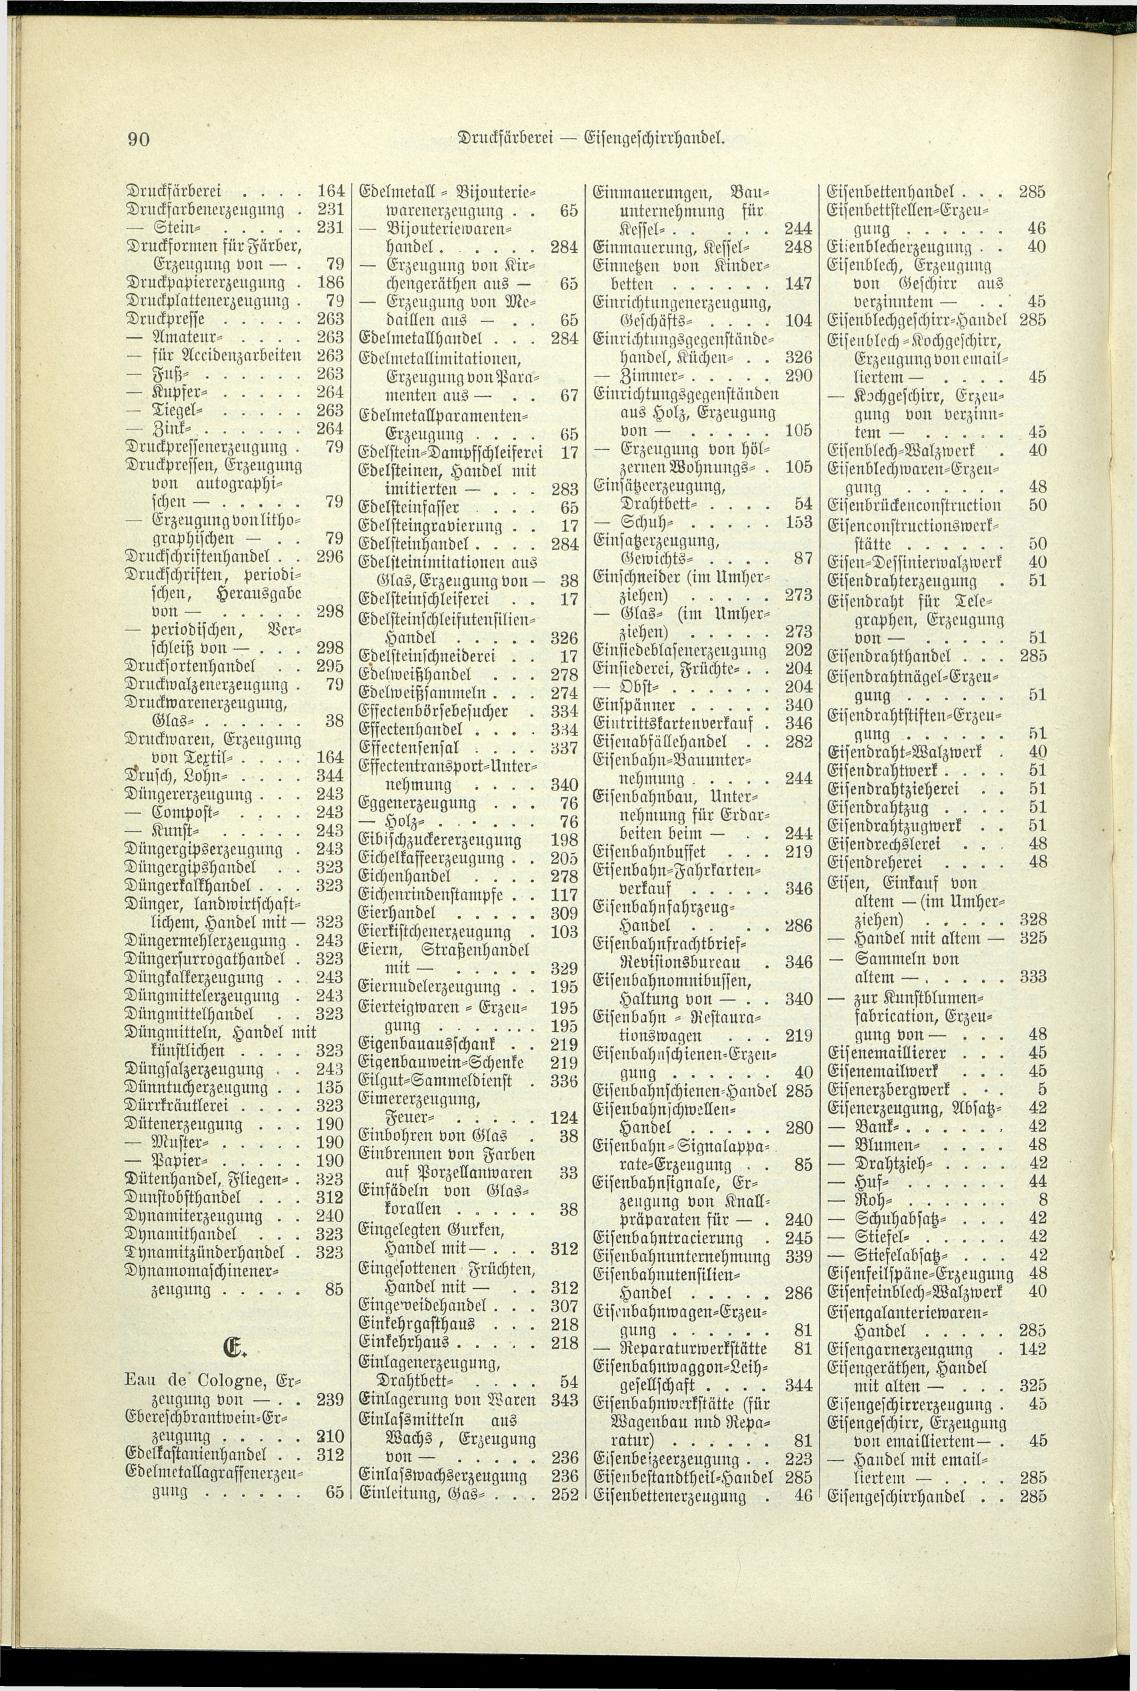 Verzeichnis der Gewerbe der im Reichsrathe vertretenen Königreiche und Länder 1900 - Page 94